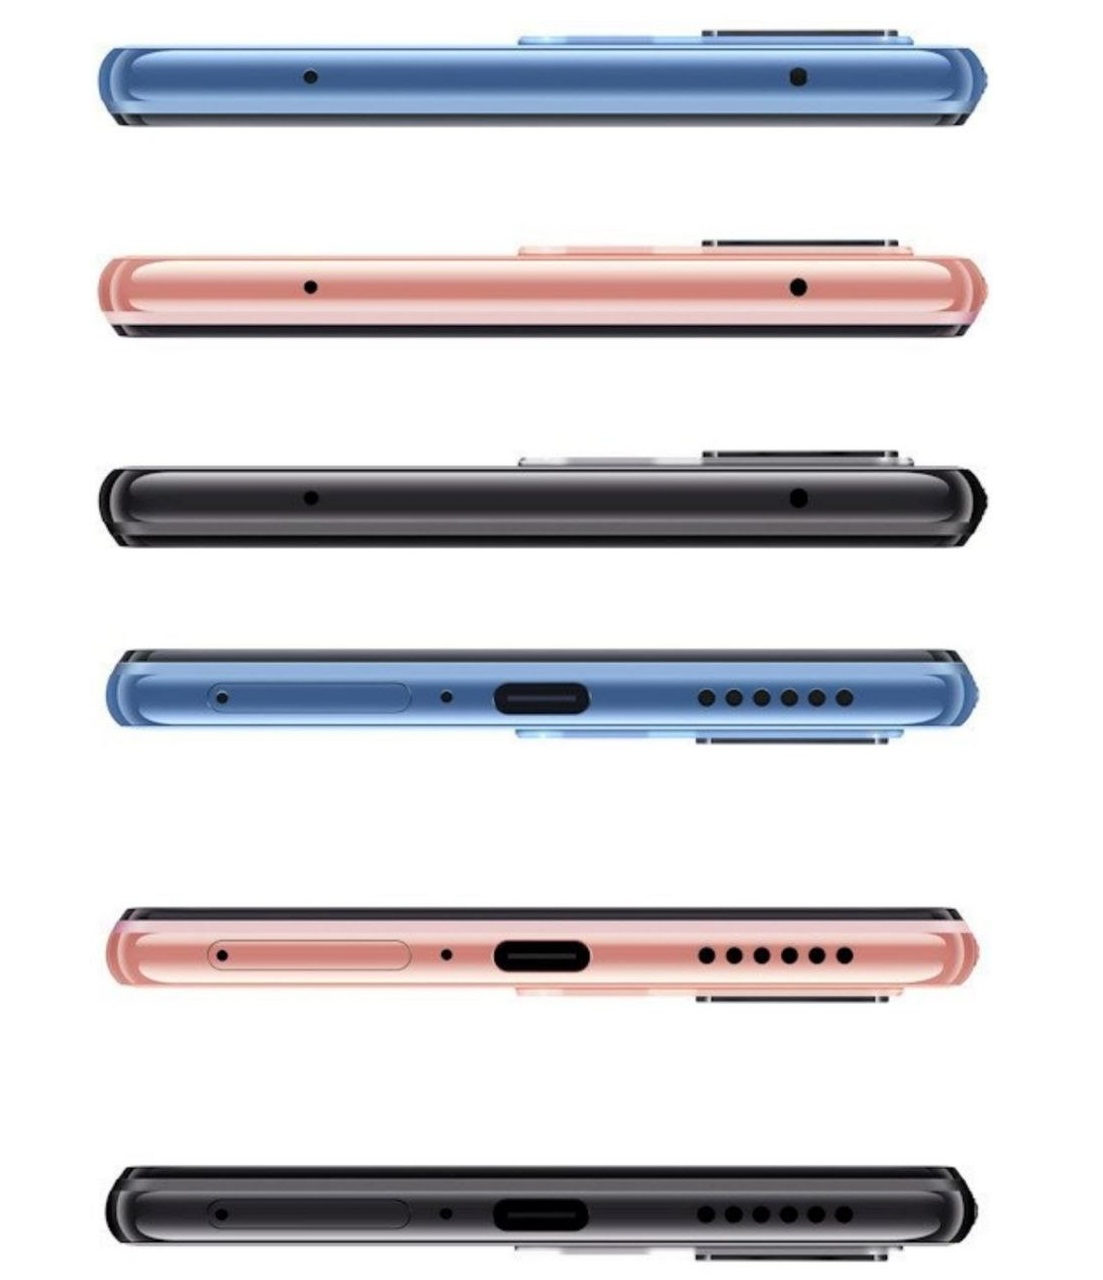 Смартфон Xiaomi Mi 11 Lite продемонстрирован в разных ракурсах на официальных изображениях